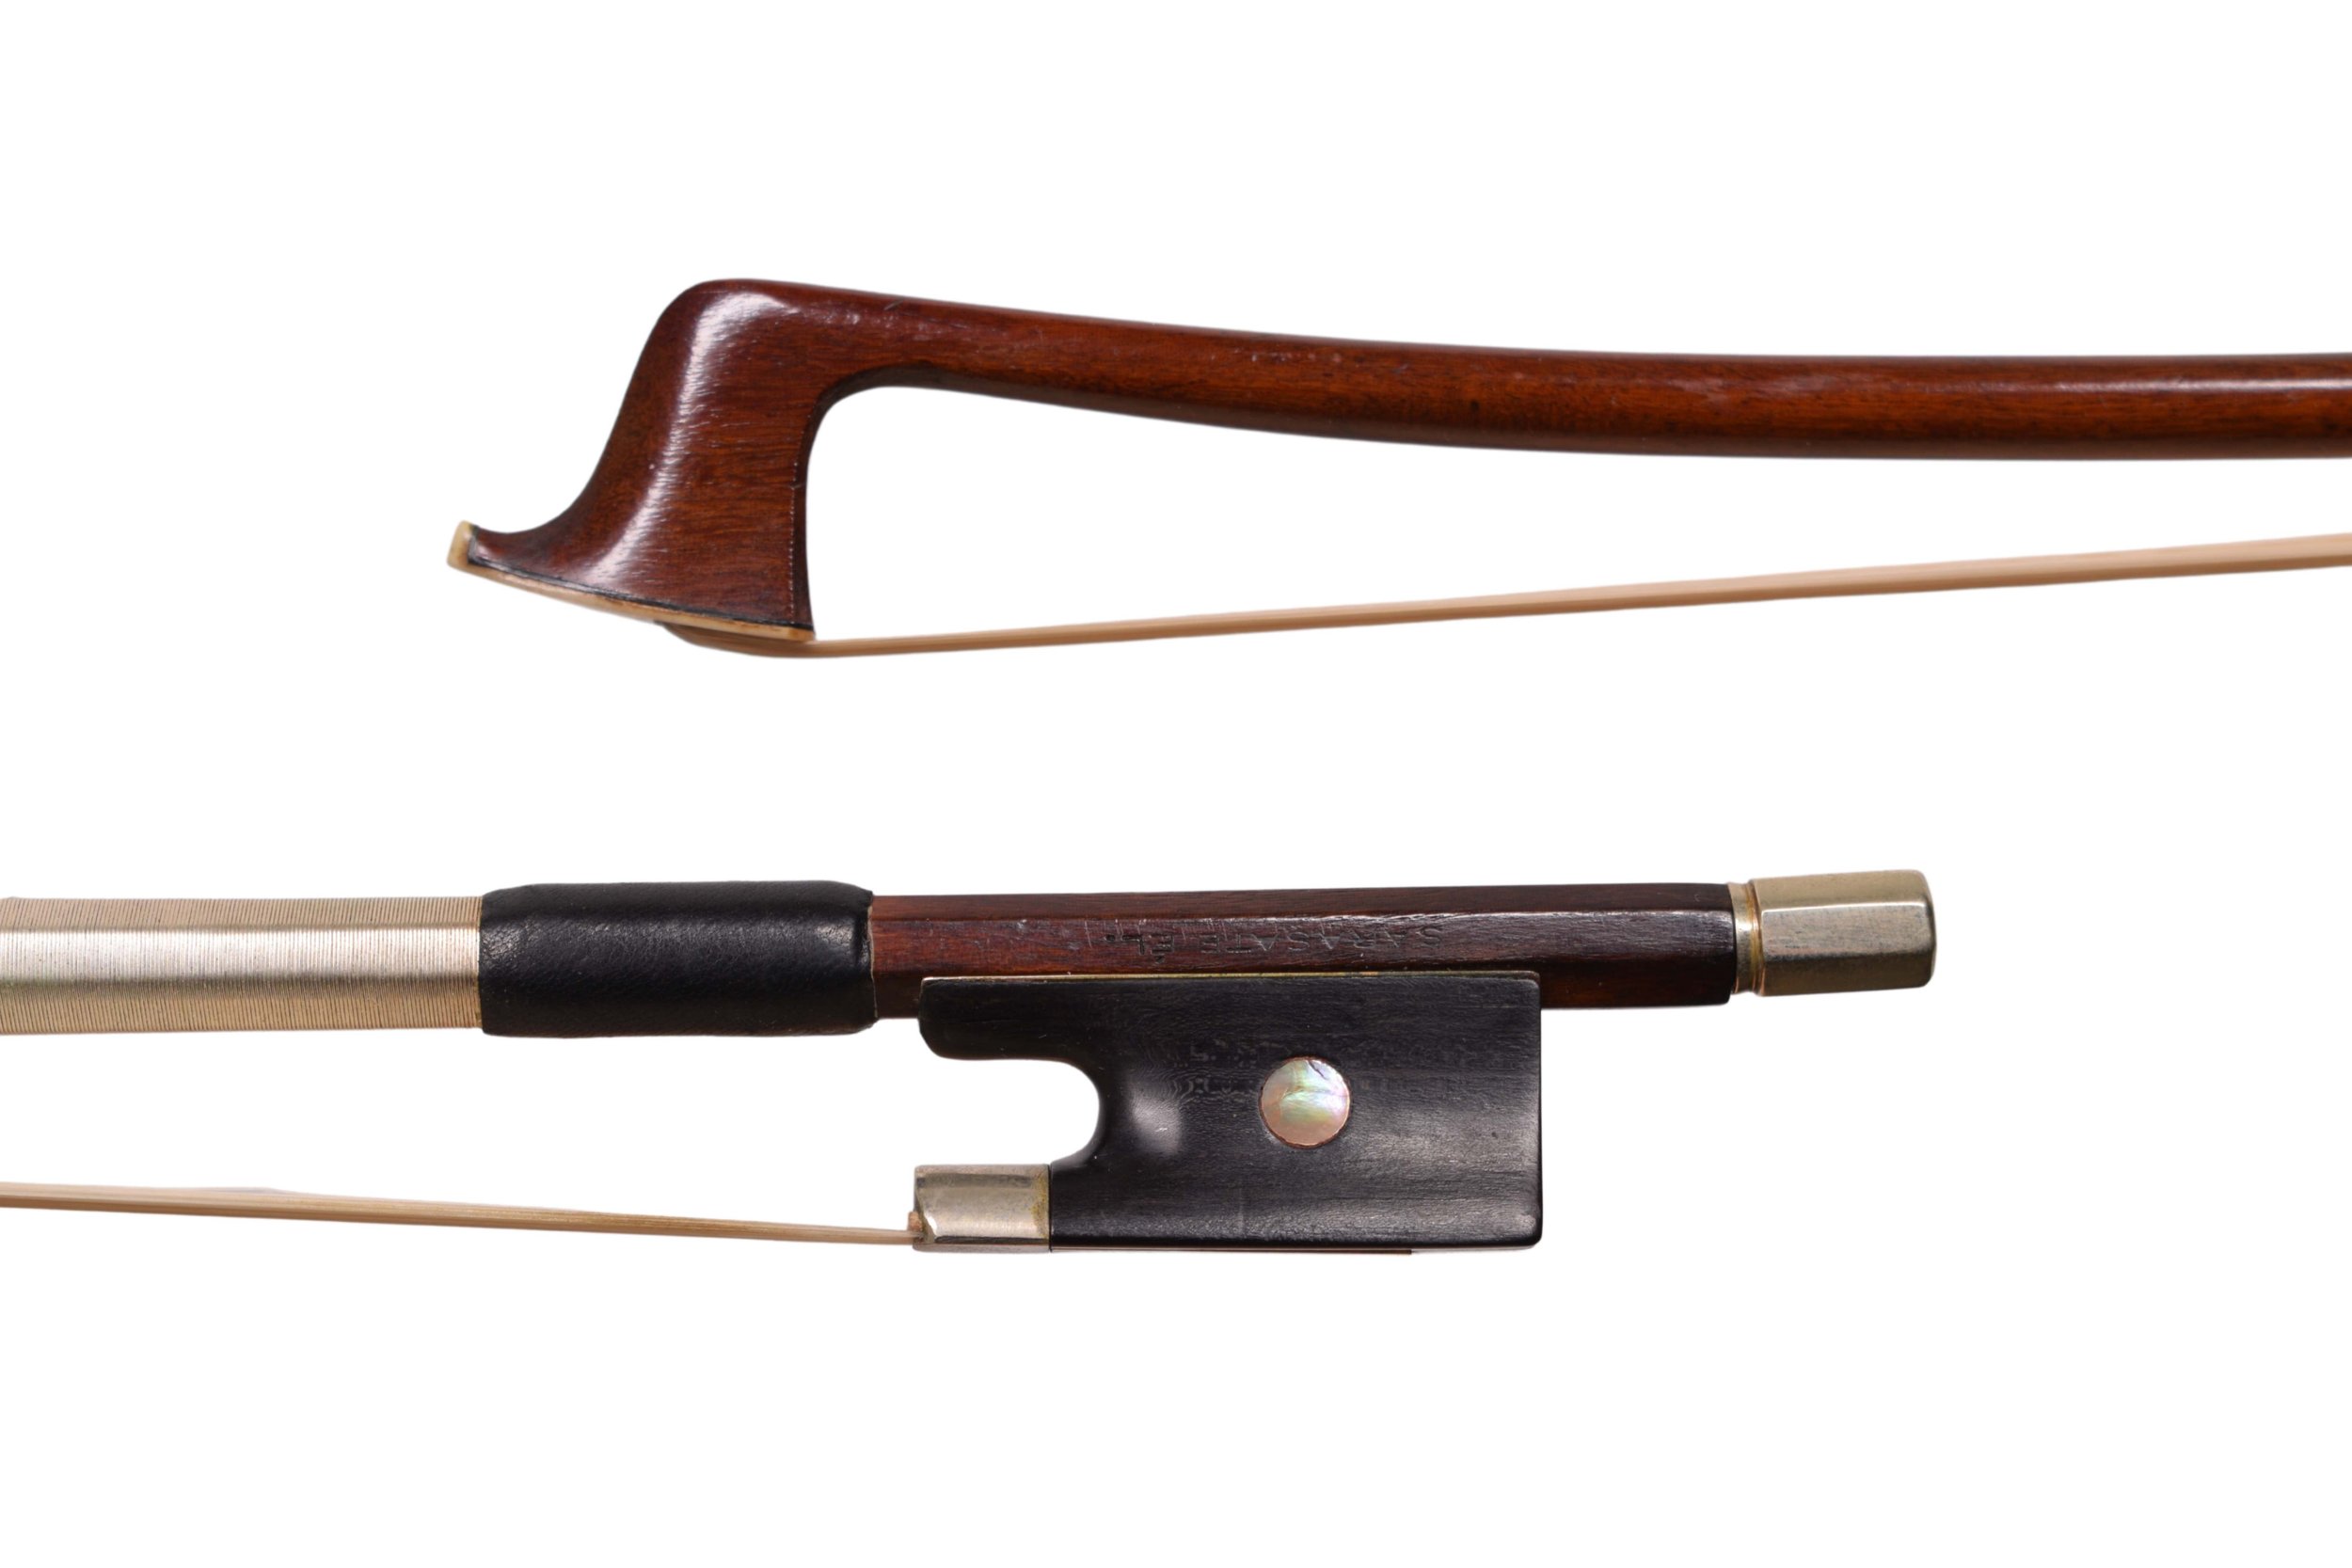 Viola bow made in Mirecourt around 1920